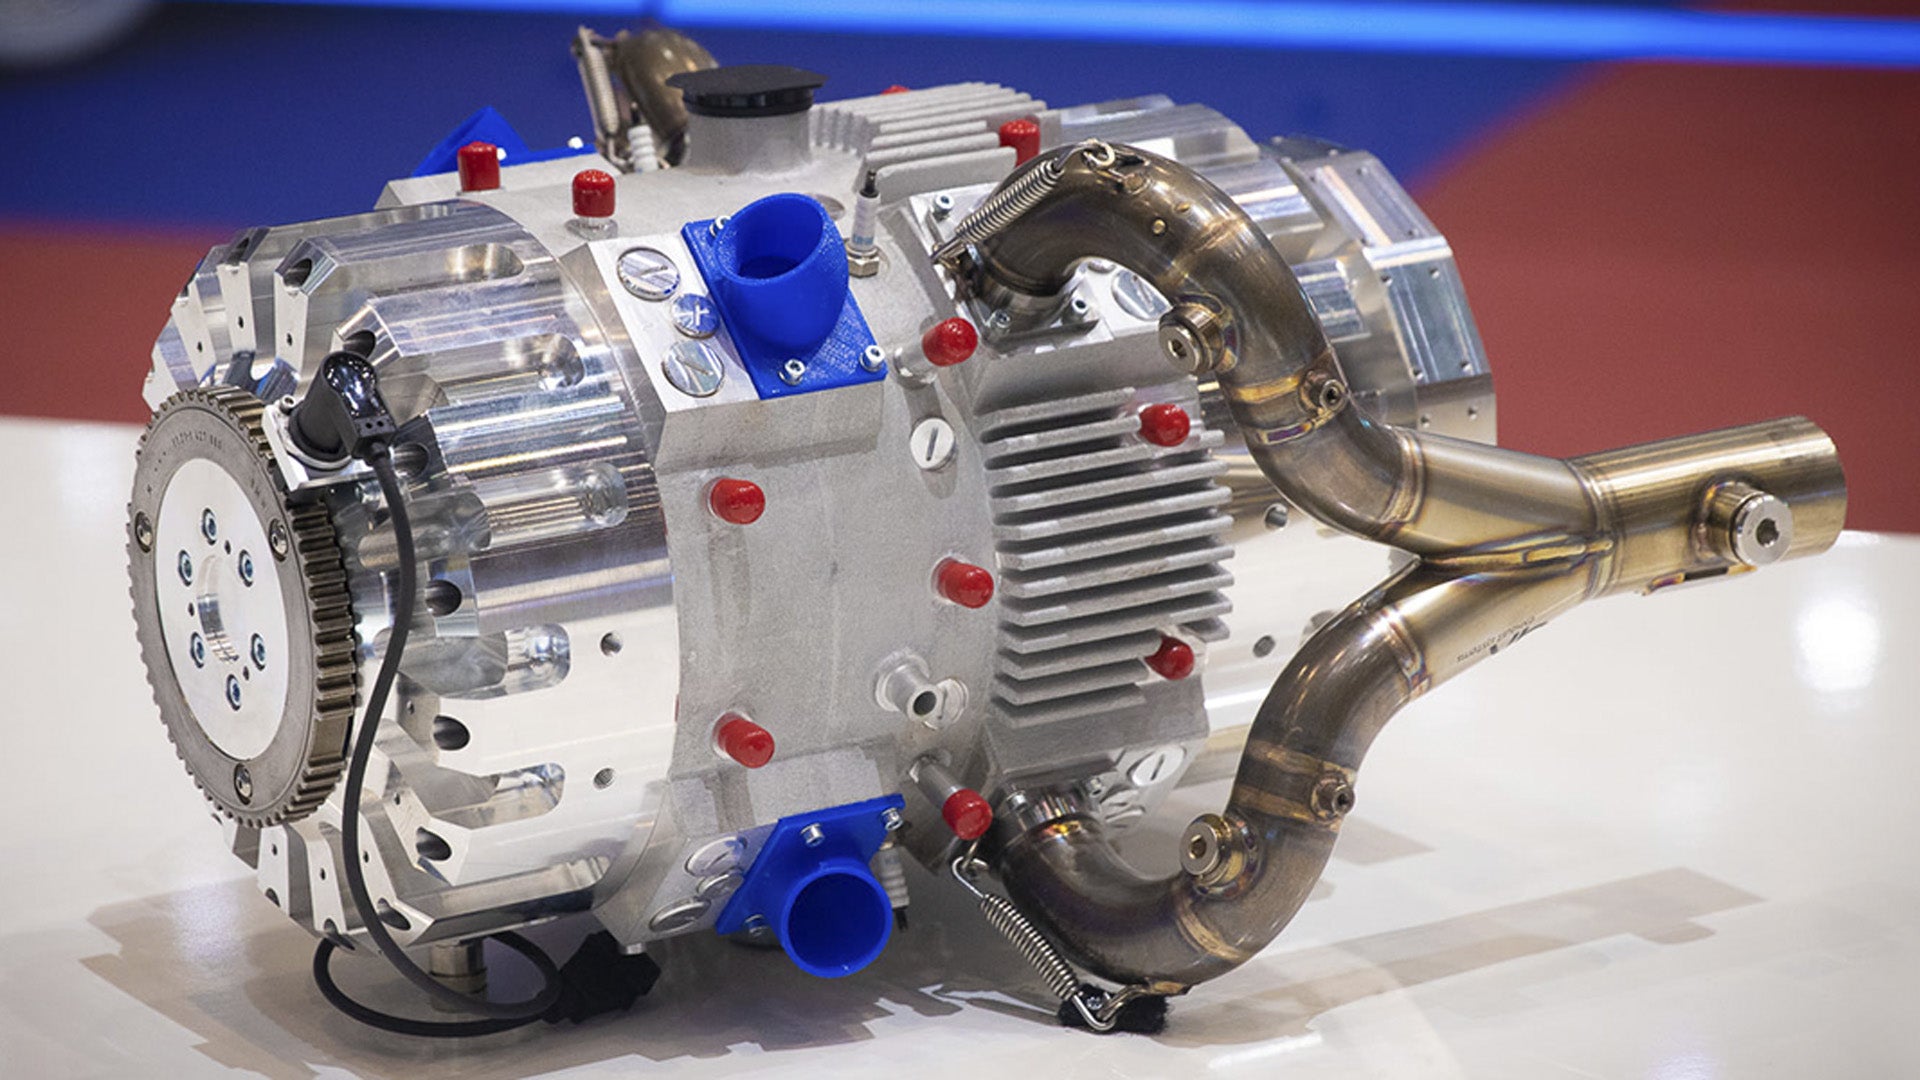 Revolutionary 500cc Engine Transforms Miata